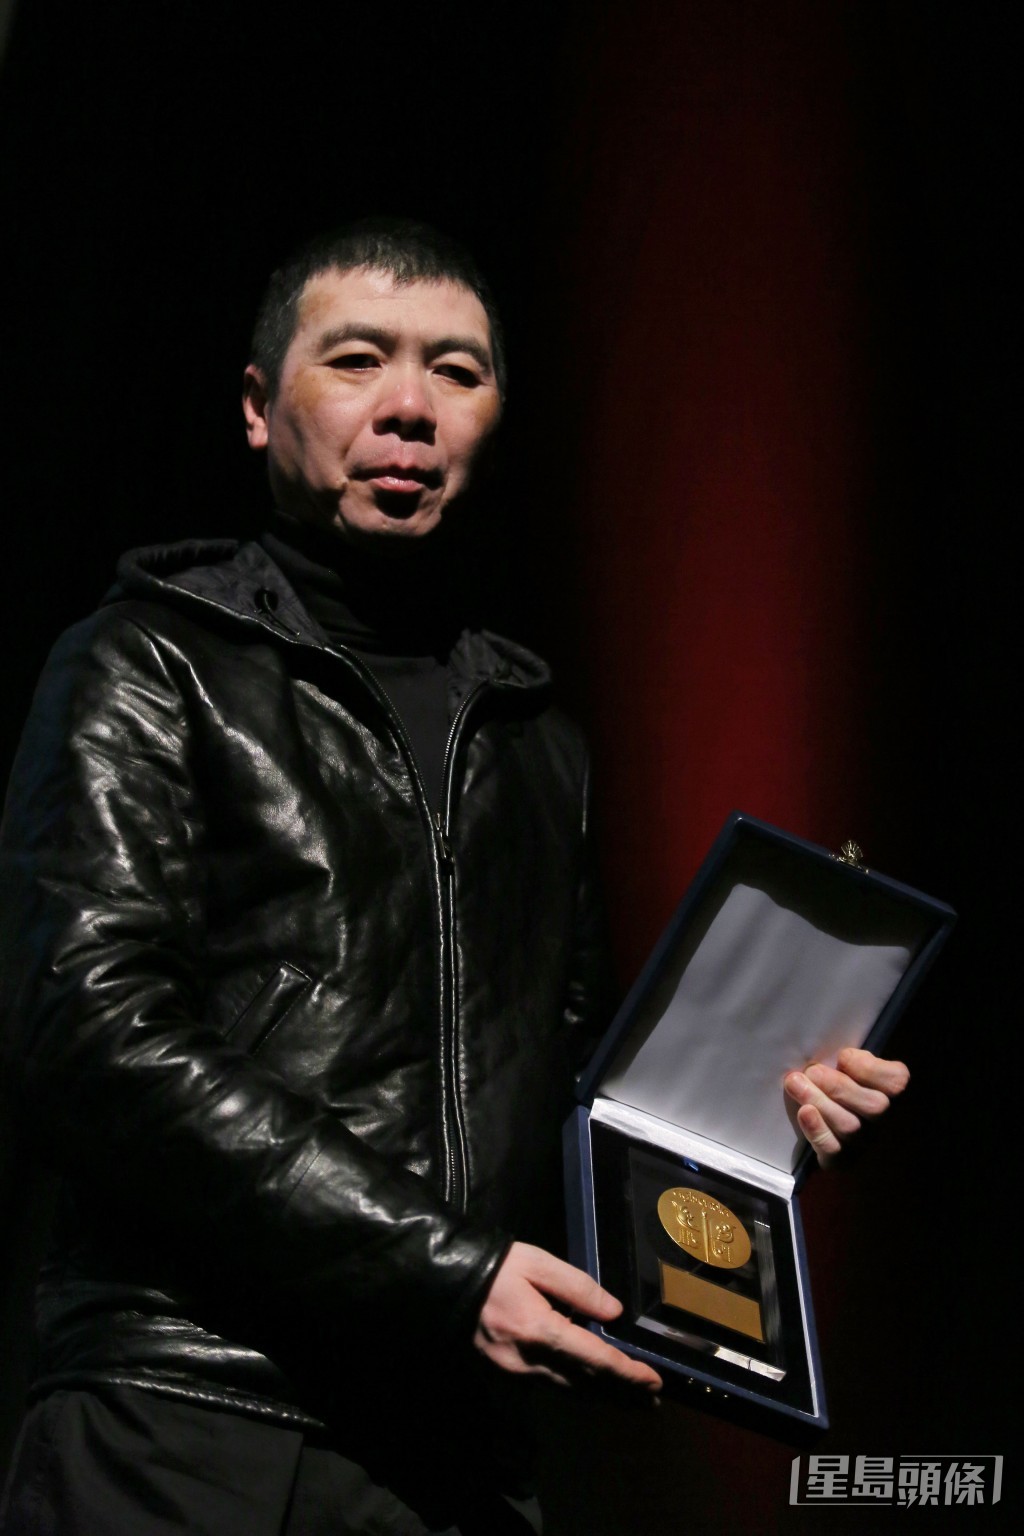 馮小剛曾以作品揚威多個外國影展。